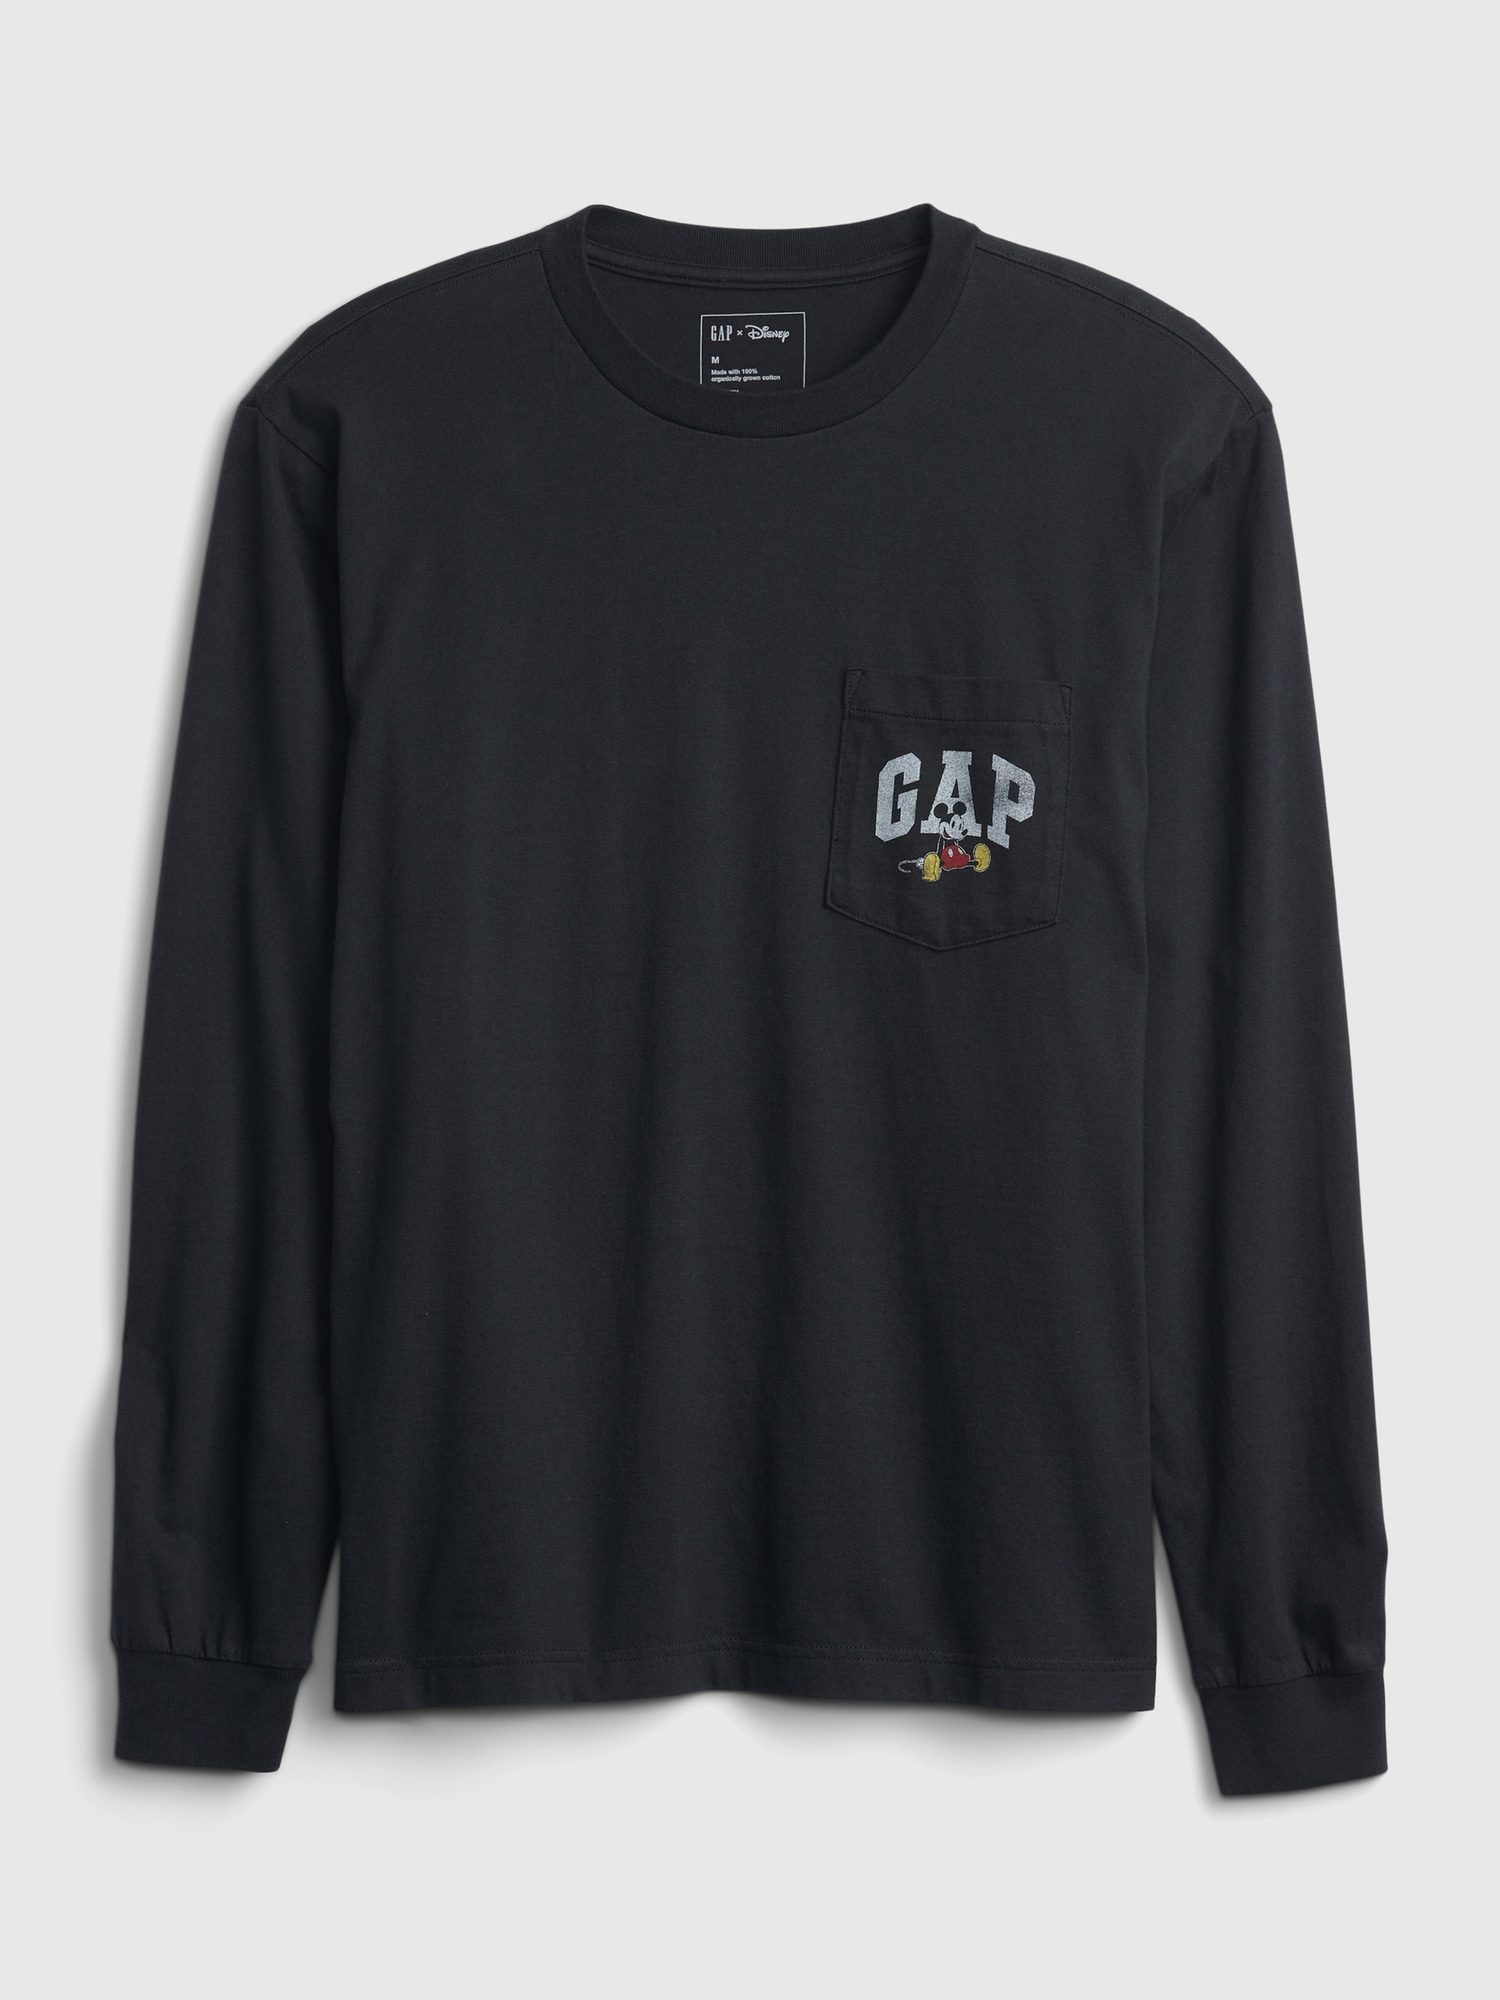 Gap ディズニー オーガニックコットン100% グラフィックtシャツ (大人サイズ・ユニセックス)